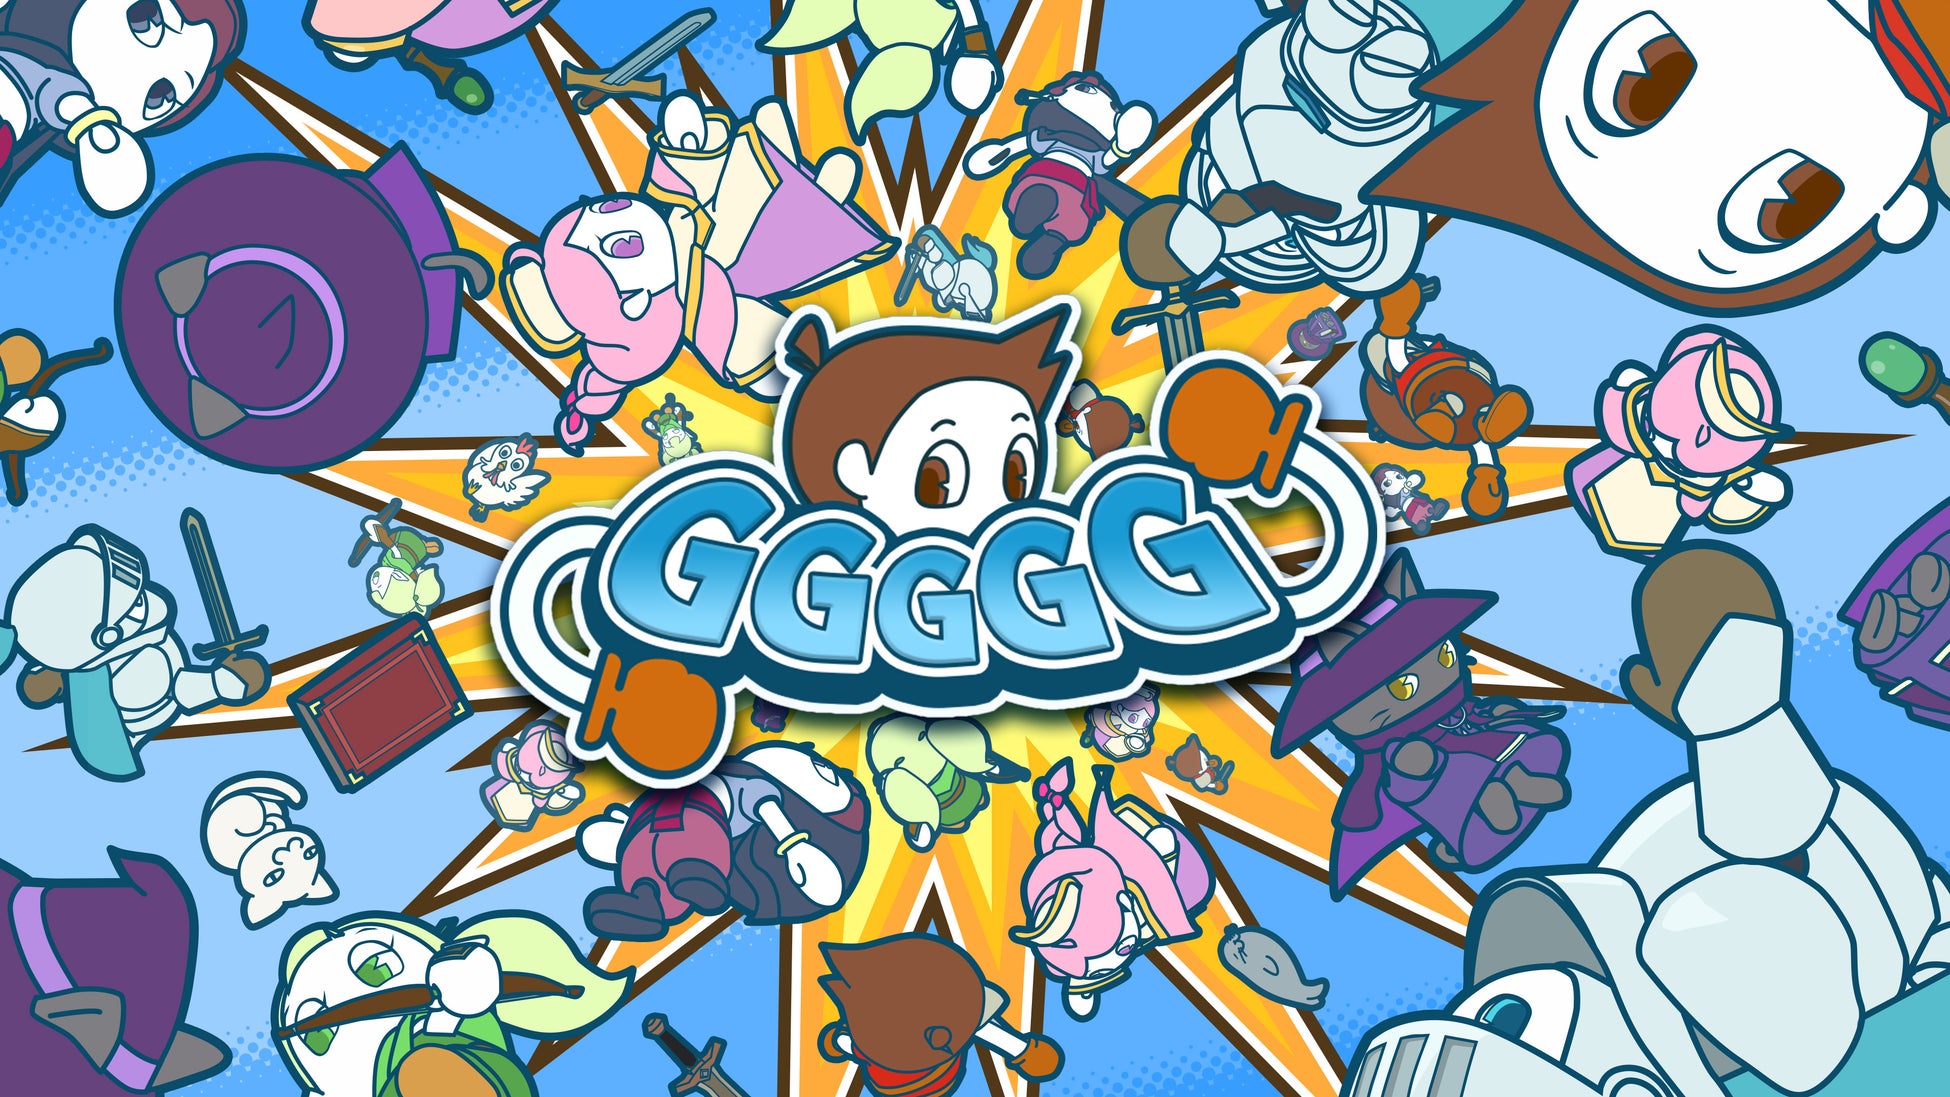 ゲーム連動型コレクションNFT 『GGGGG』FREE MINT（無料）でNFTを提供！